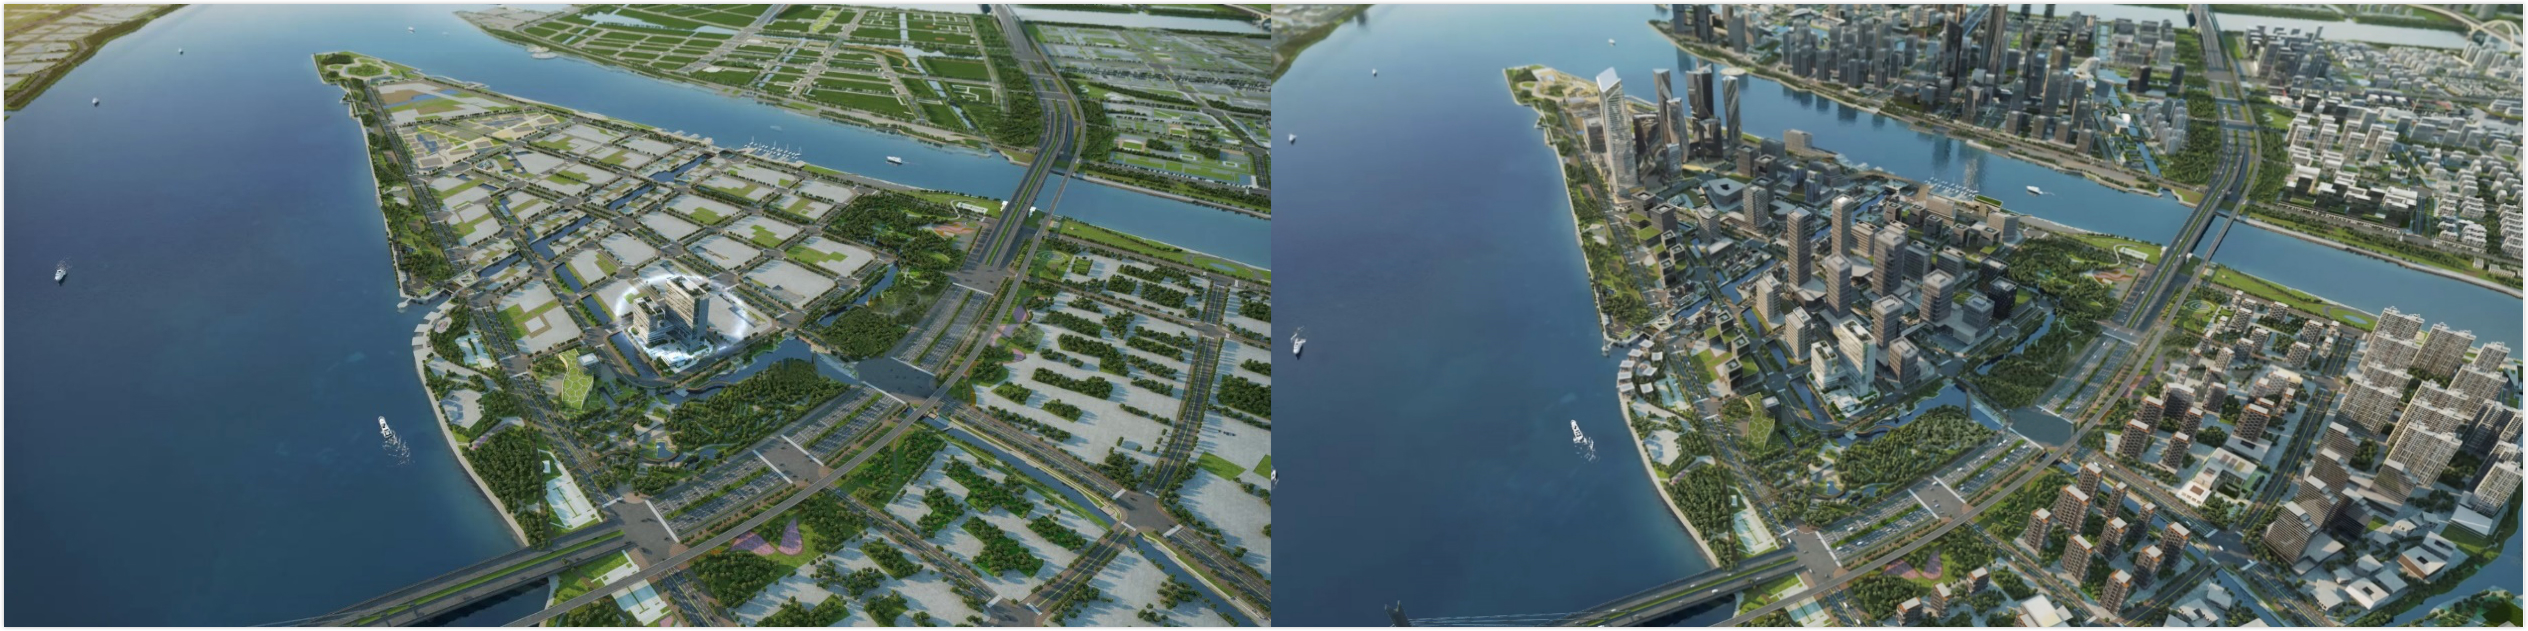 研发空间智能技术，「宸境科技」想要打造城市级别镜像世界